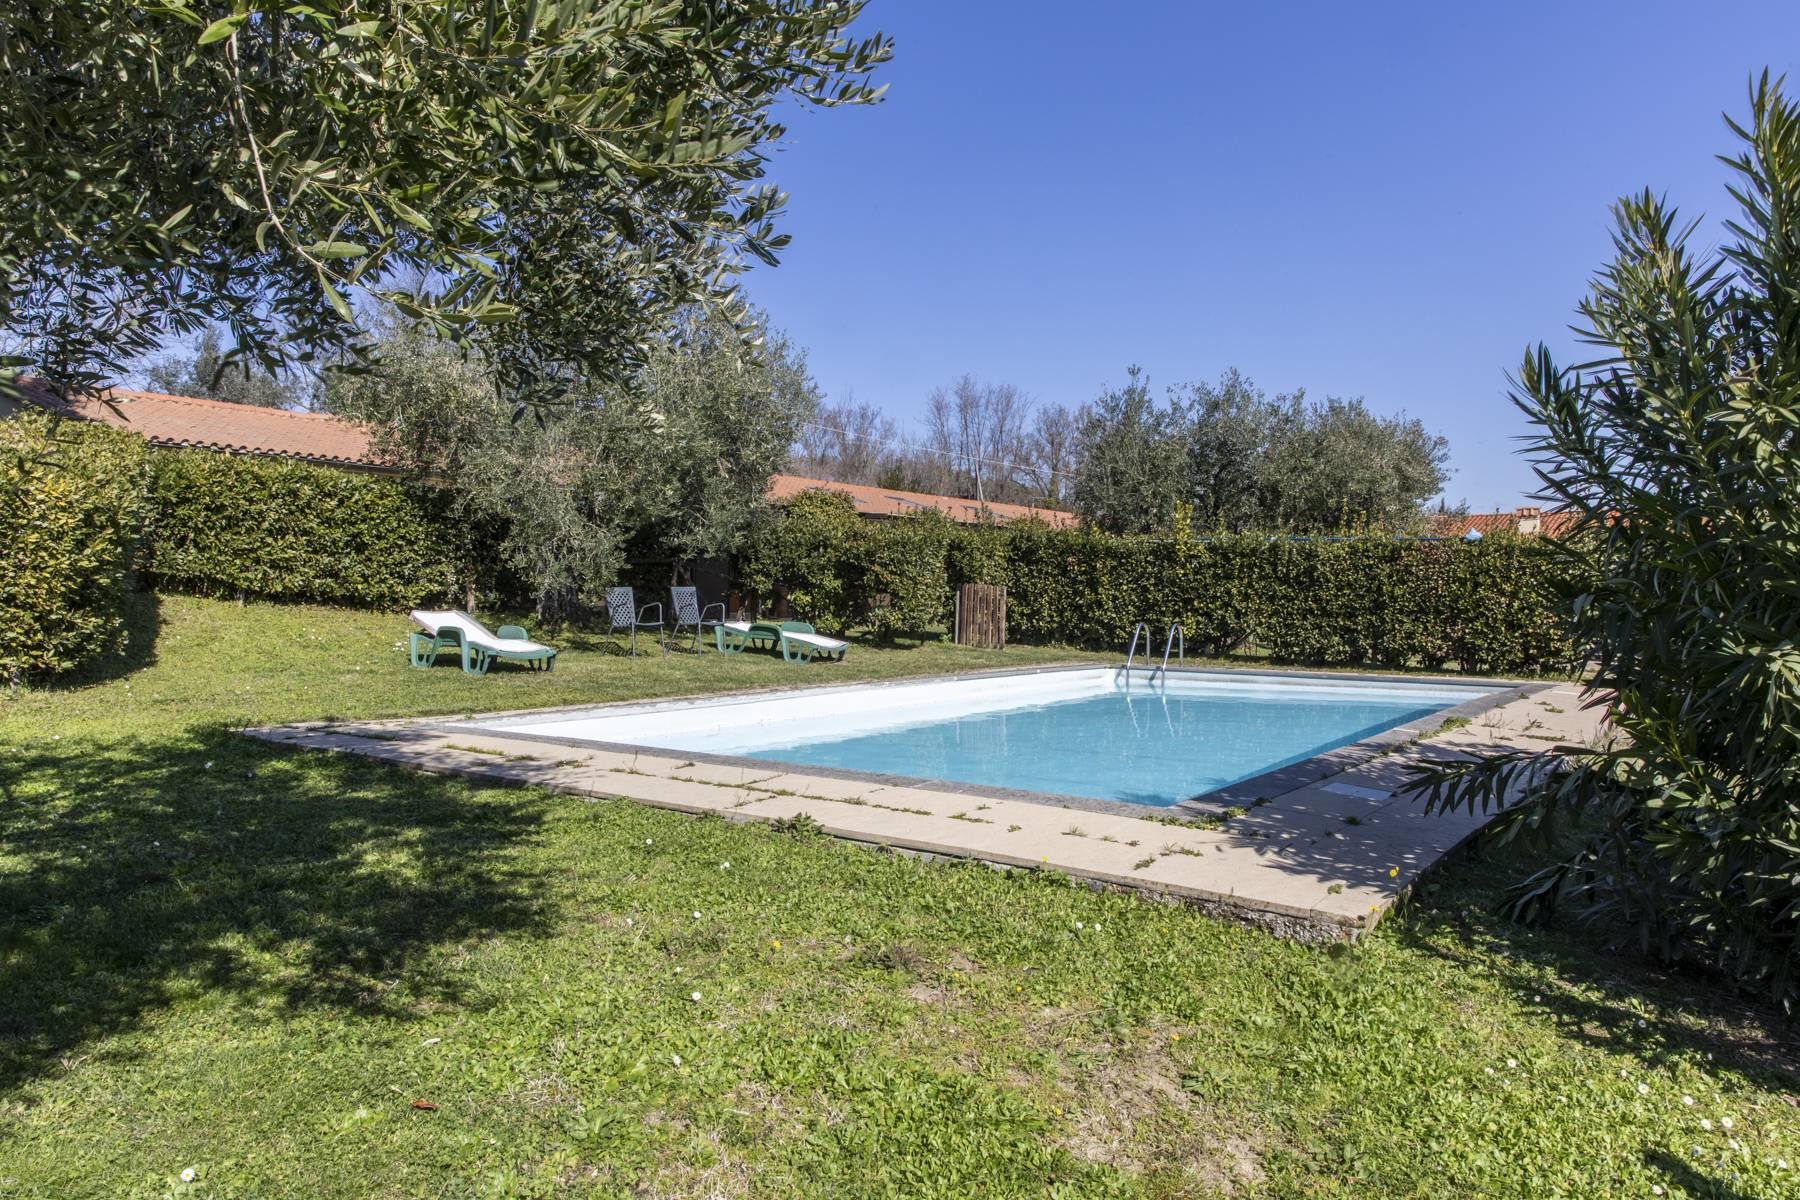 Country Resort dans un endroit enchanteur avec piscine et parc près de Rome - 2